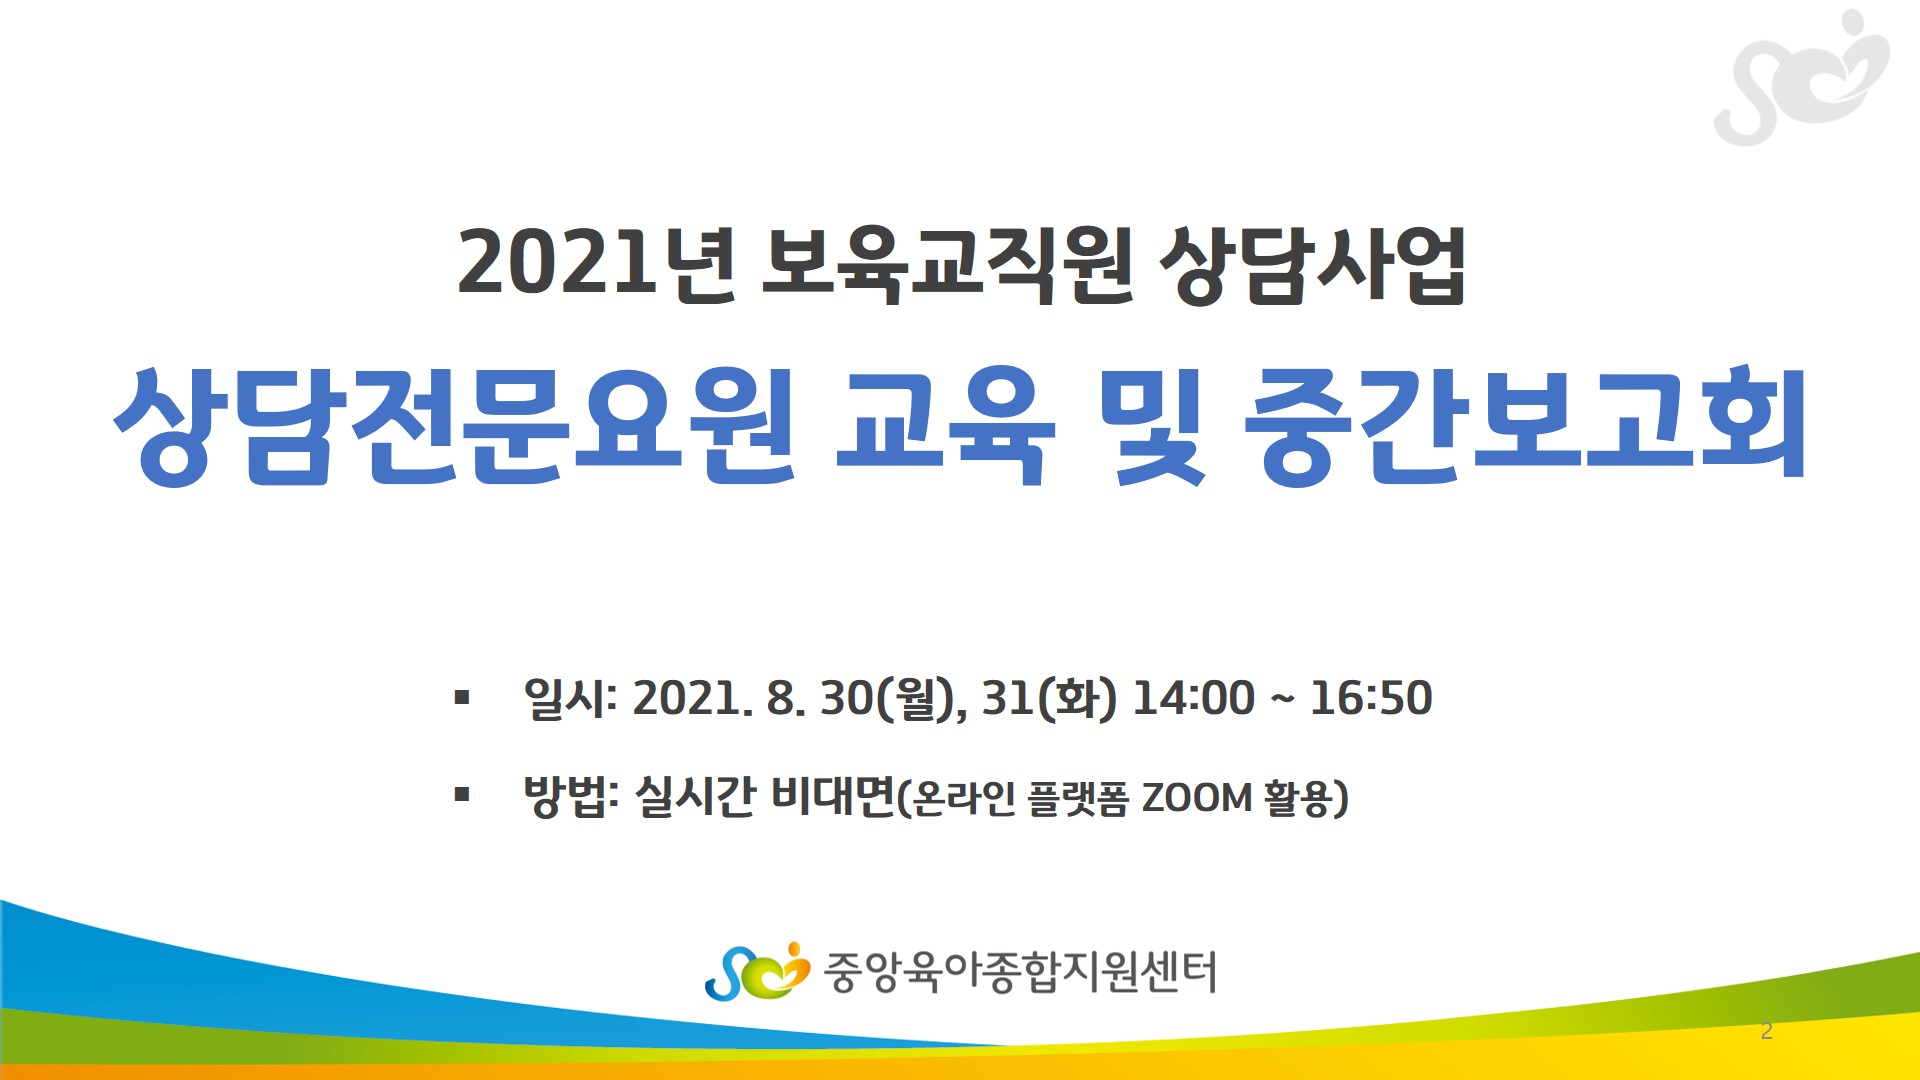 2021년 보육교직원 상담사업 상담전문요원 교육 및 중간보고회 일시: 2021.8.30(월), 31(화) 14:00 ~ 16:50 방법: 실시간 비대면(온라인 플랫폼 ZOOM 활용)